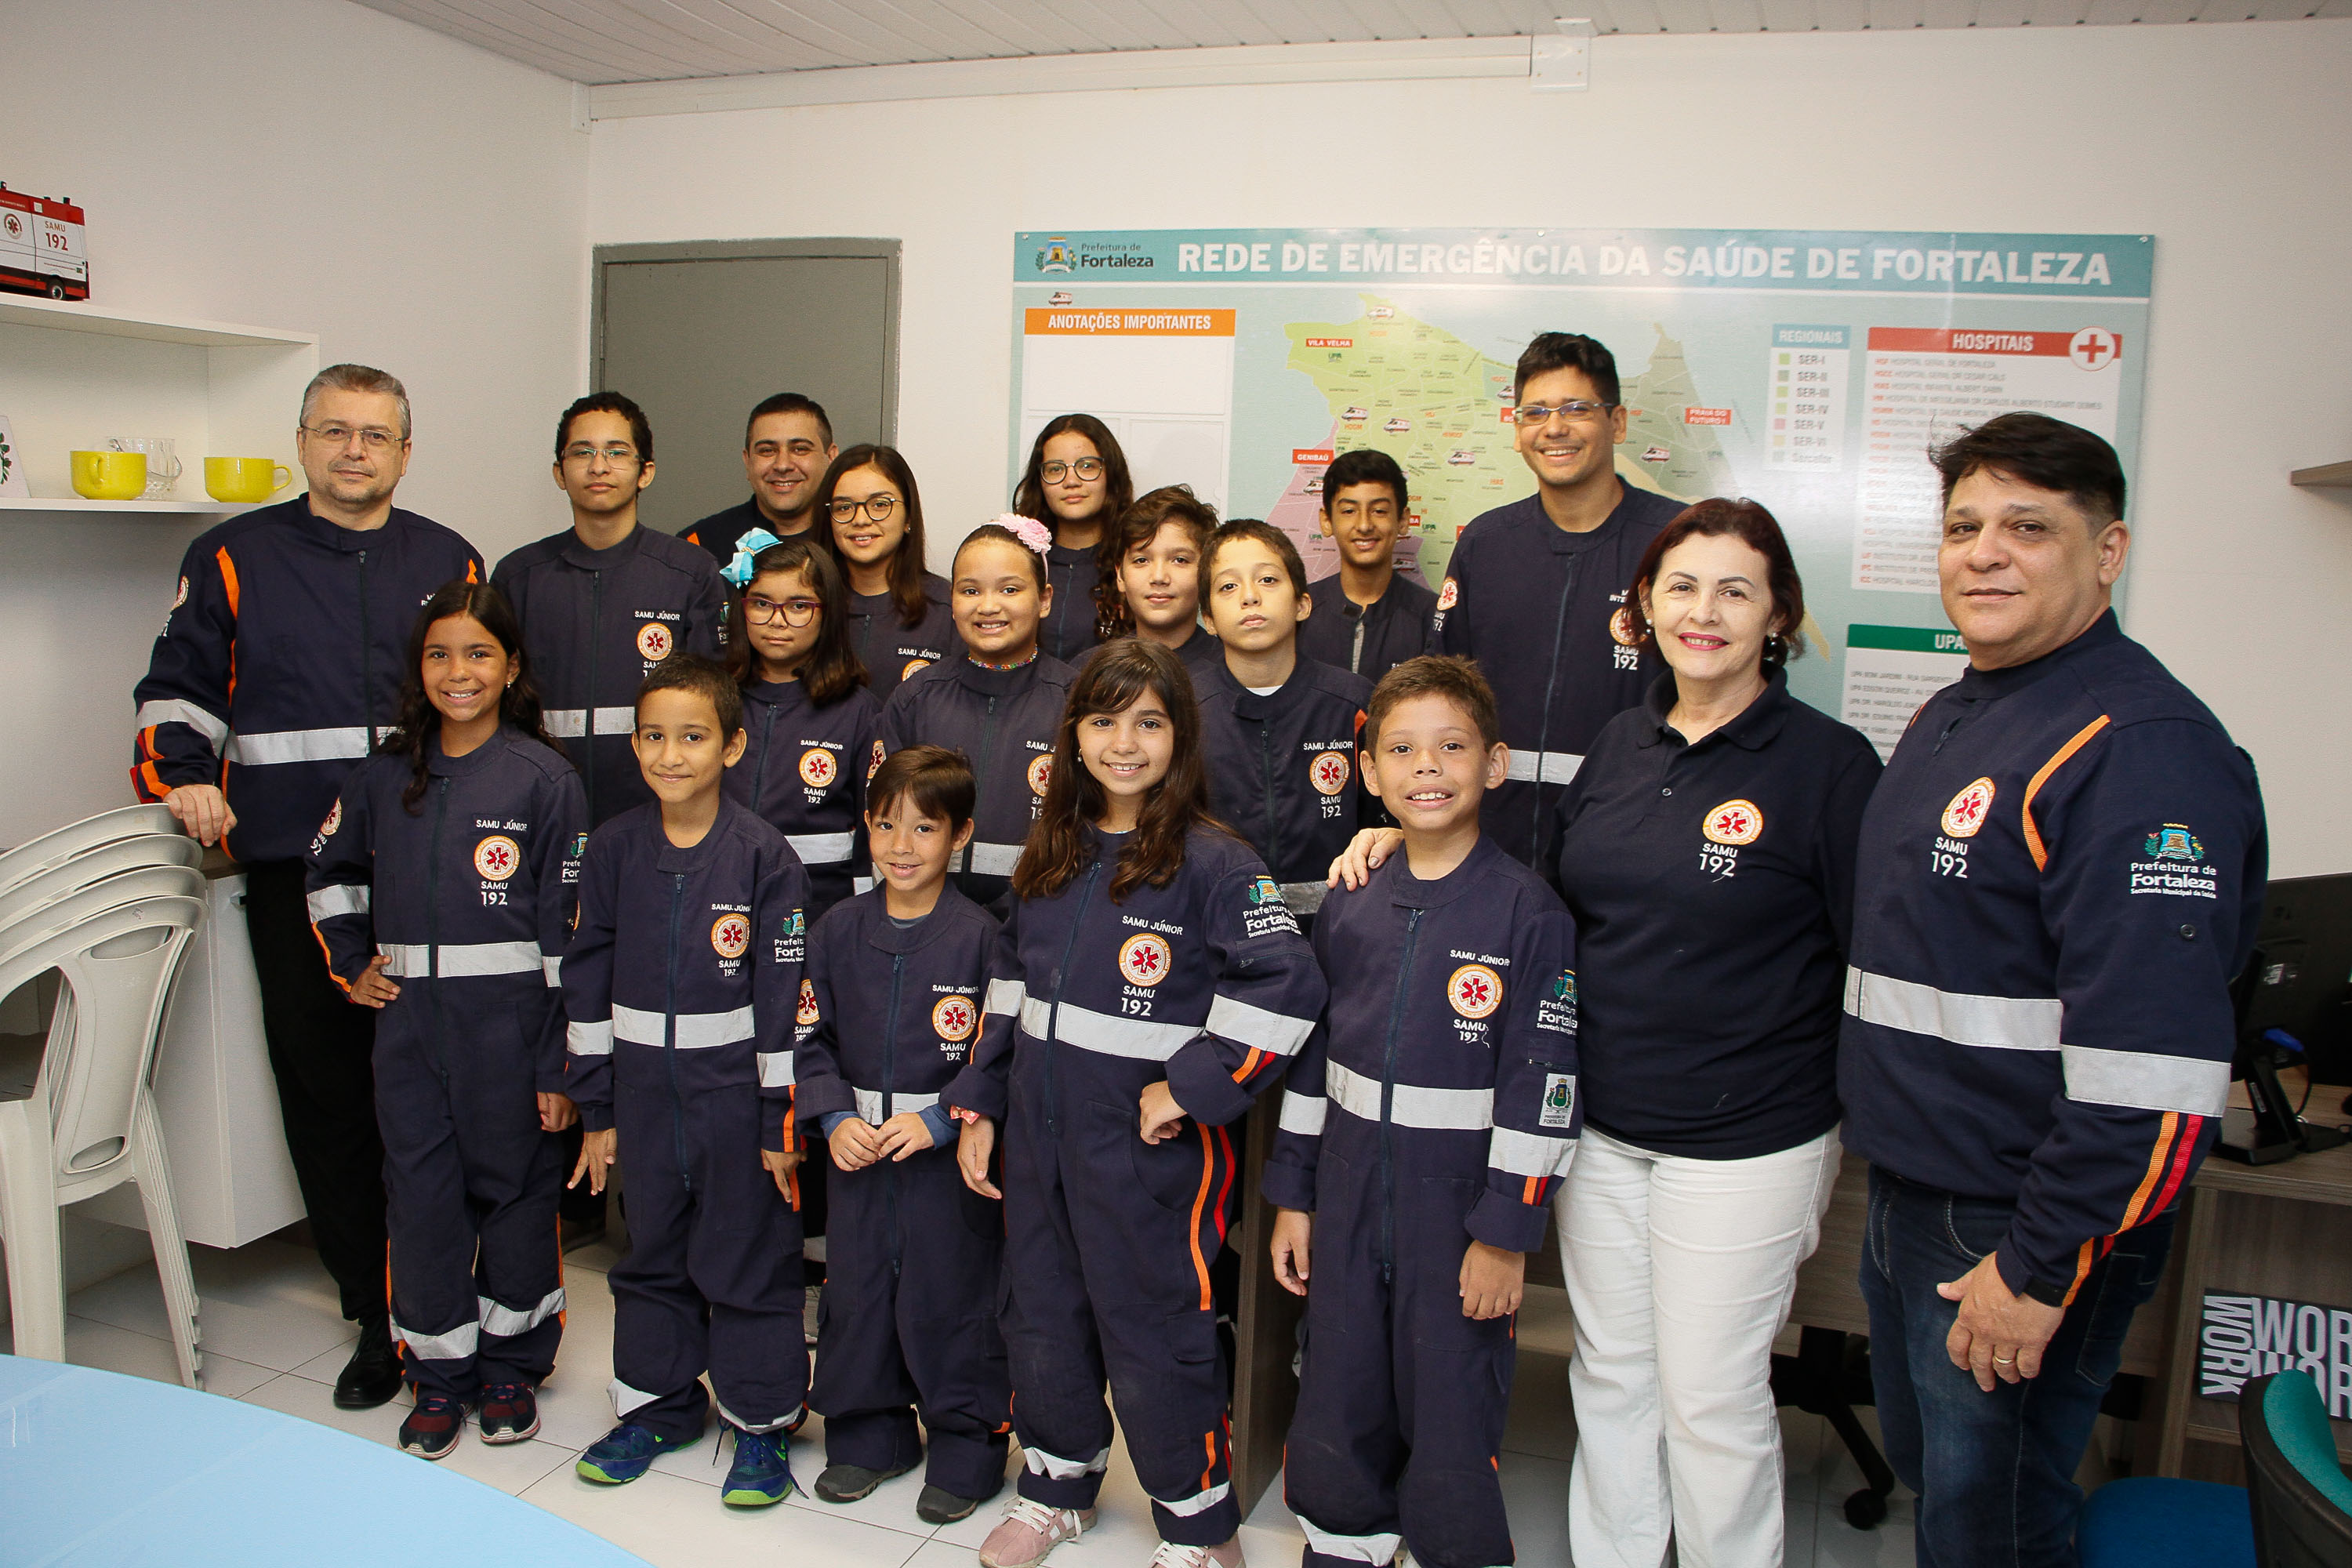 Grupo de instrutores e crianças em pé sorrindo e vestidas com uniforme do Samu